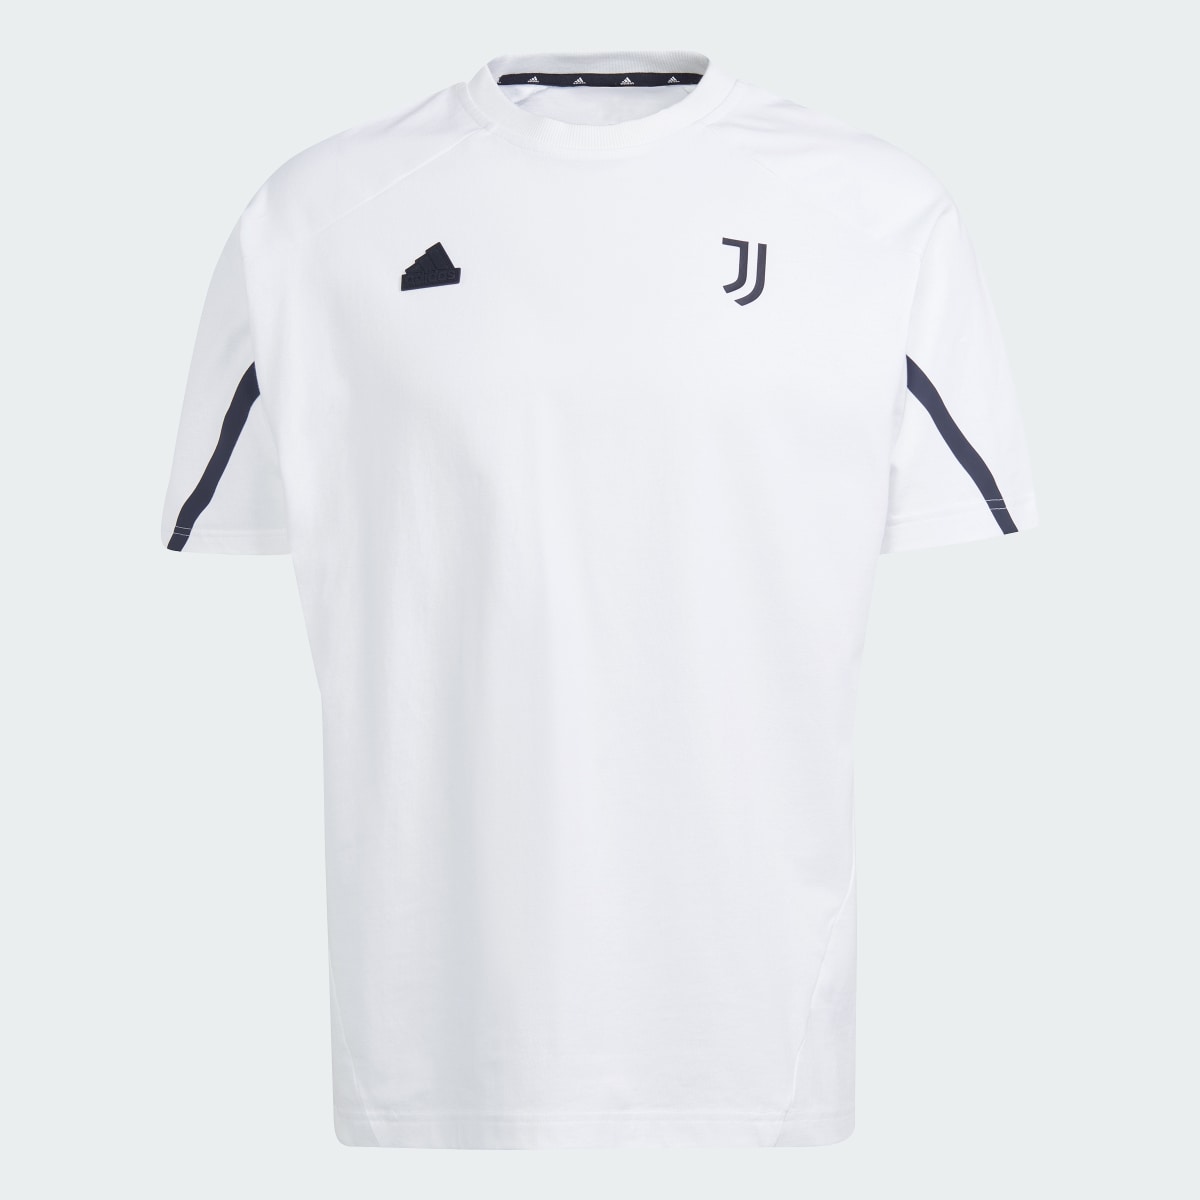 Adidas T-shirt Juventus Designed for Gameday. 5